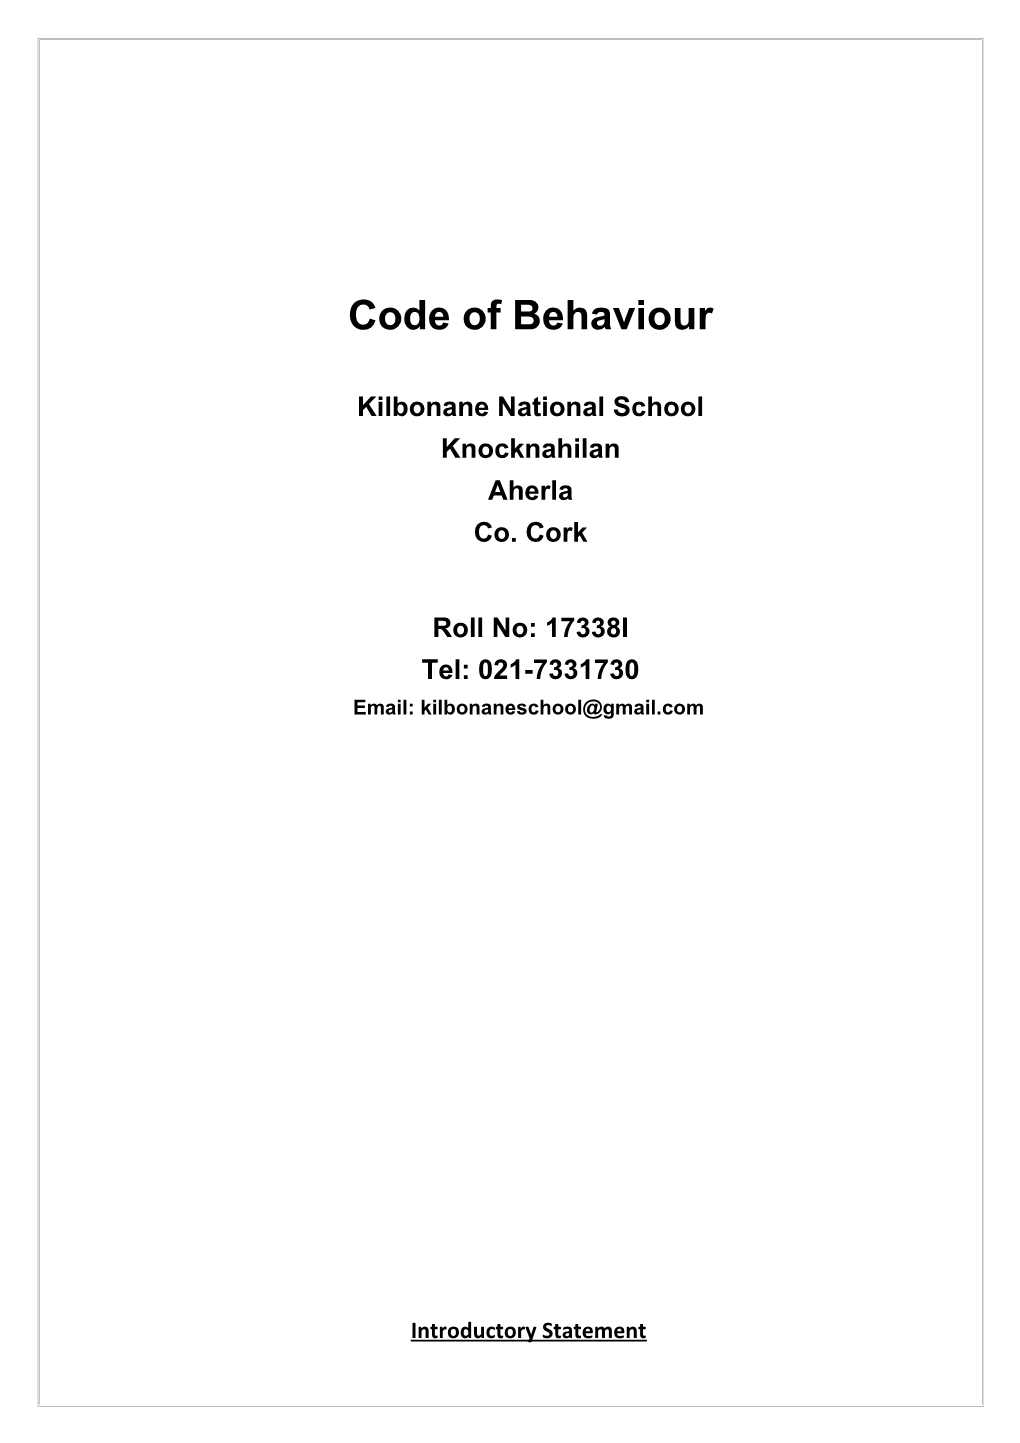 Code of Behaviour s1